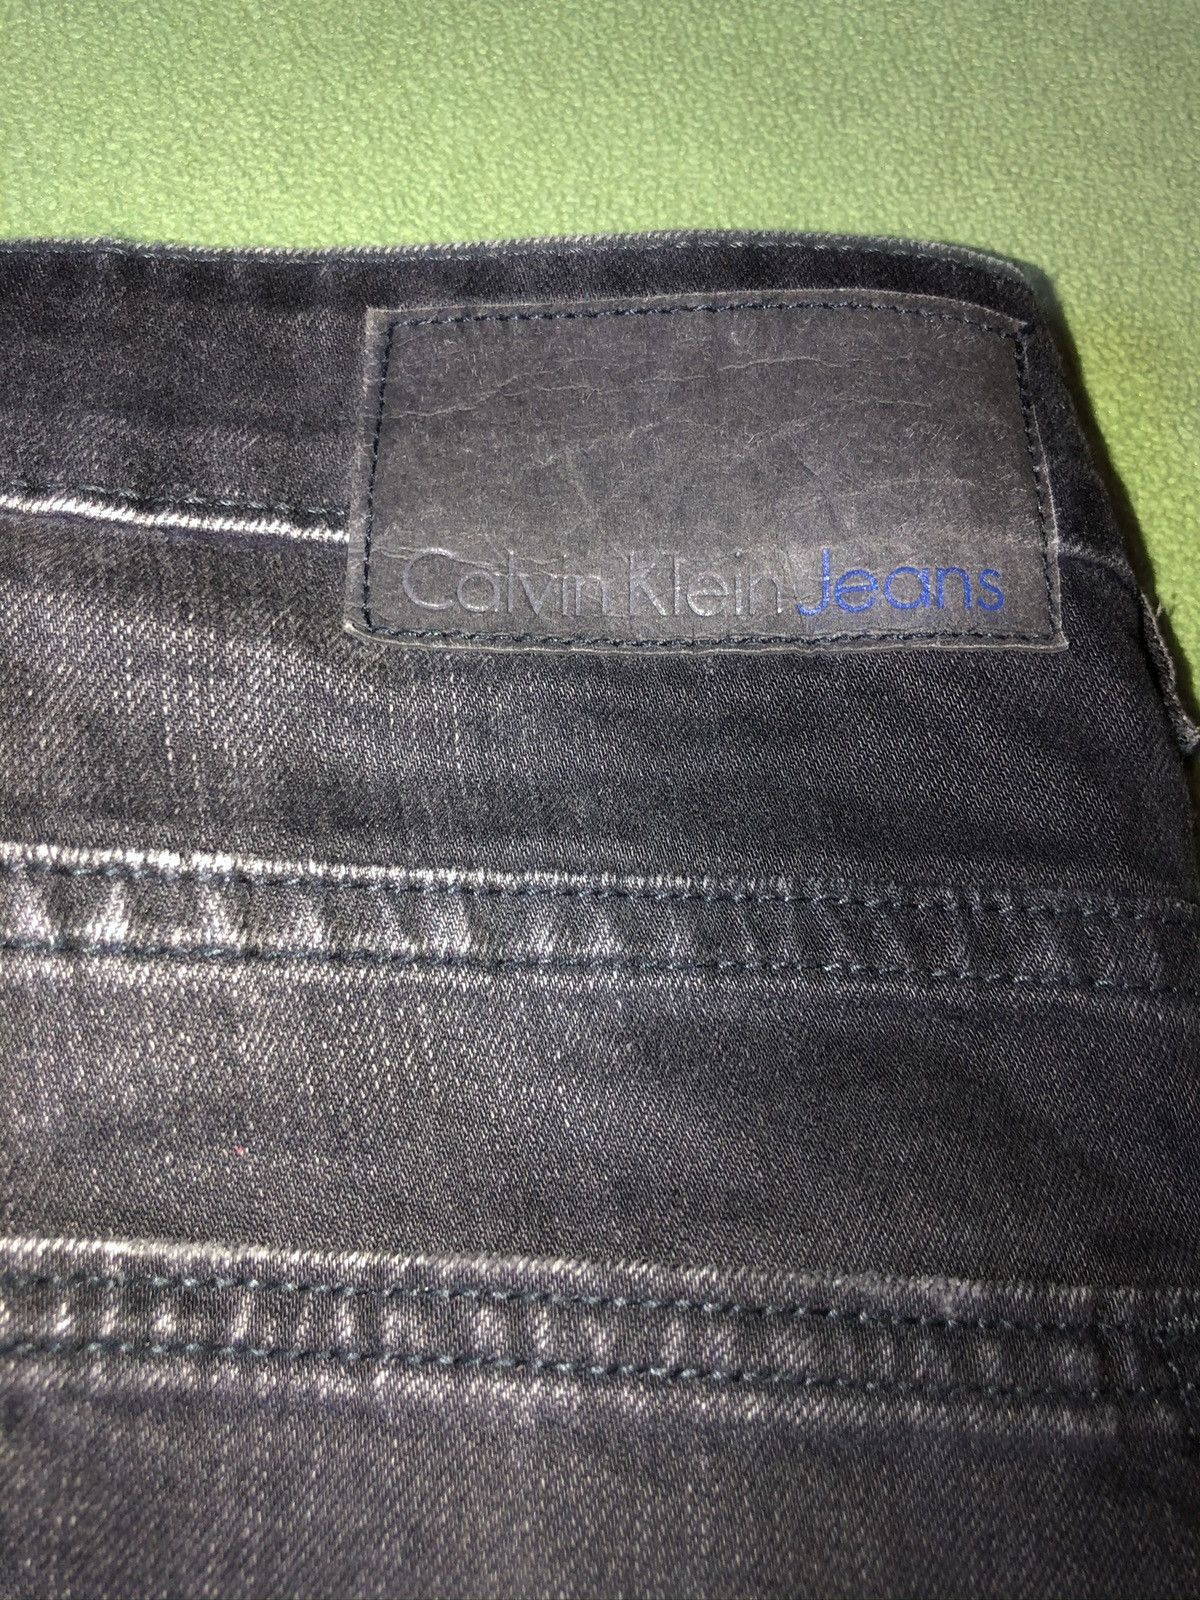 Calvin Klein Biker Jeans Size US 32 / EU 48 - 5 Preview